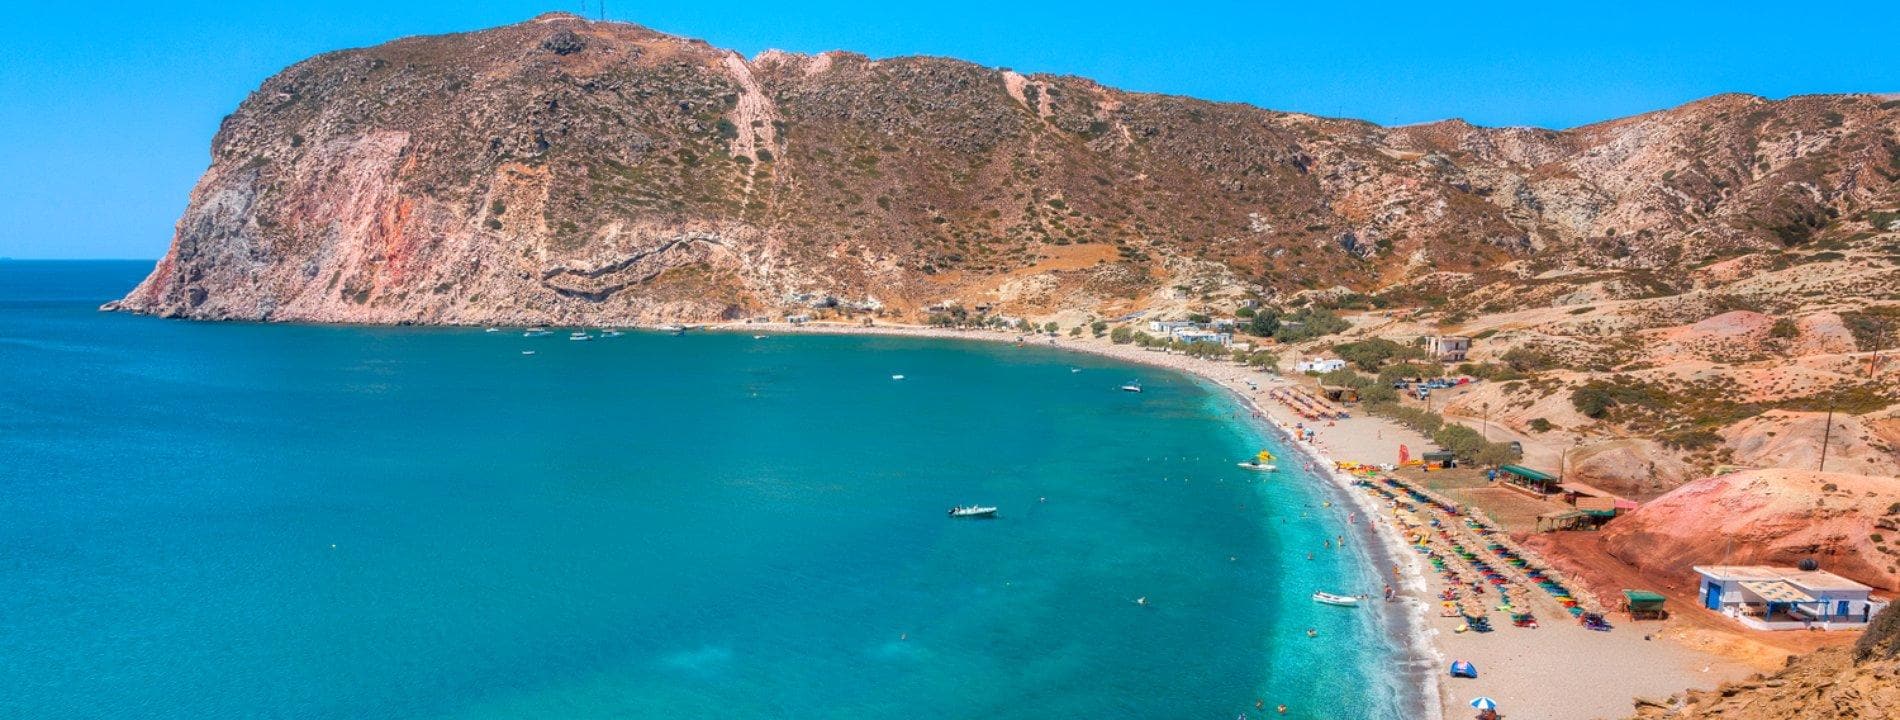 Vacanze a Milos | Eden Viaggi